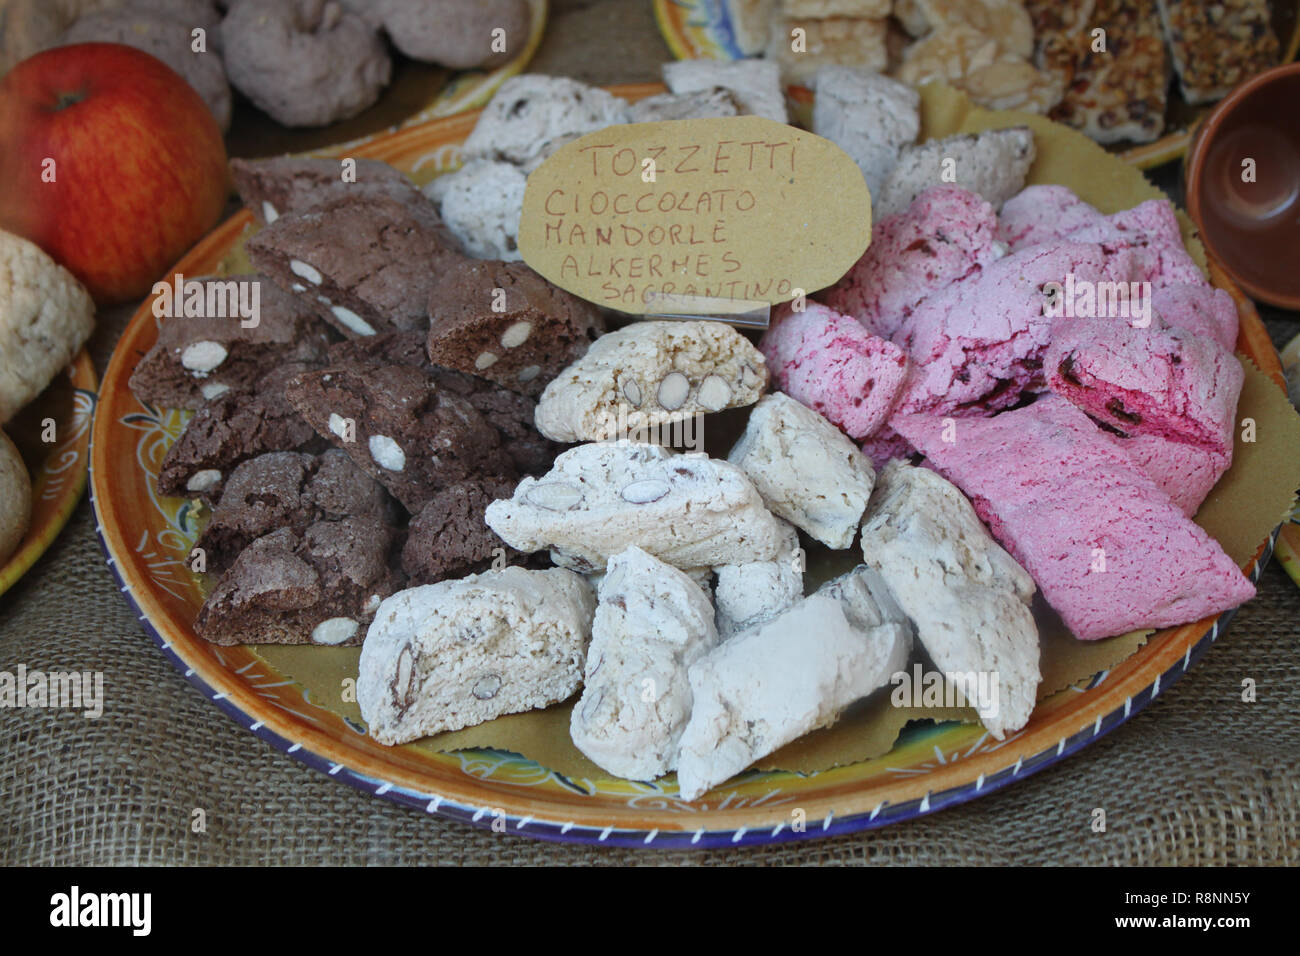 Tradizionale Italiana Tozzetti biscotti visualizzati in una panetteria. Testo in italiano descrive i diversi sapori dei biscotti. Foto Stock